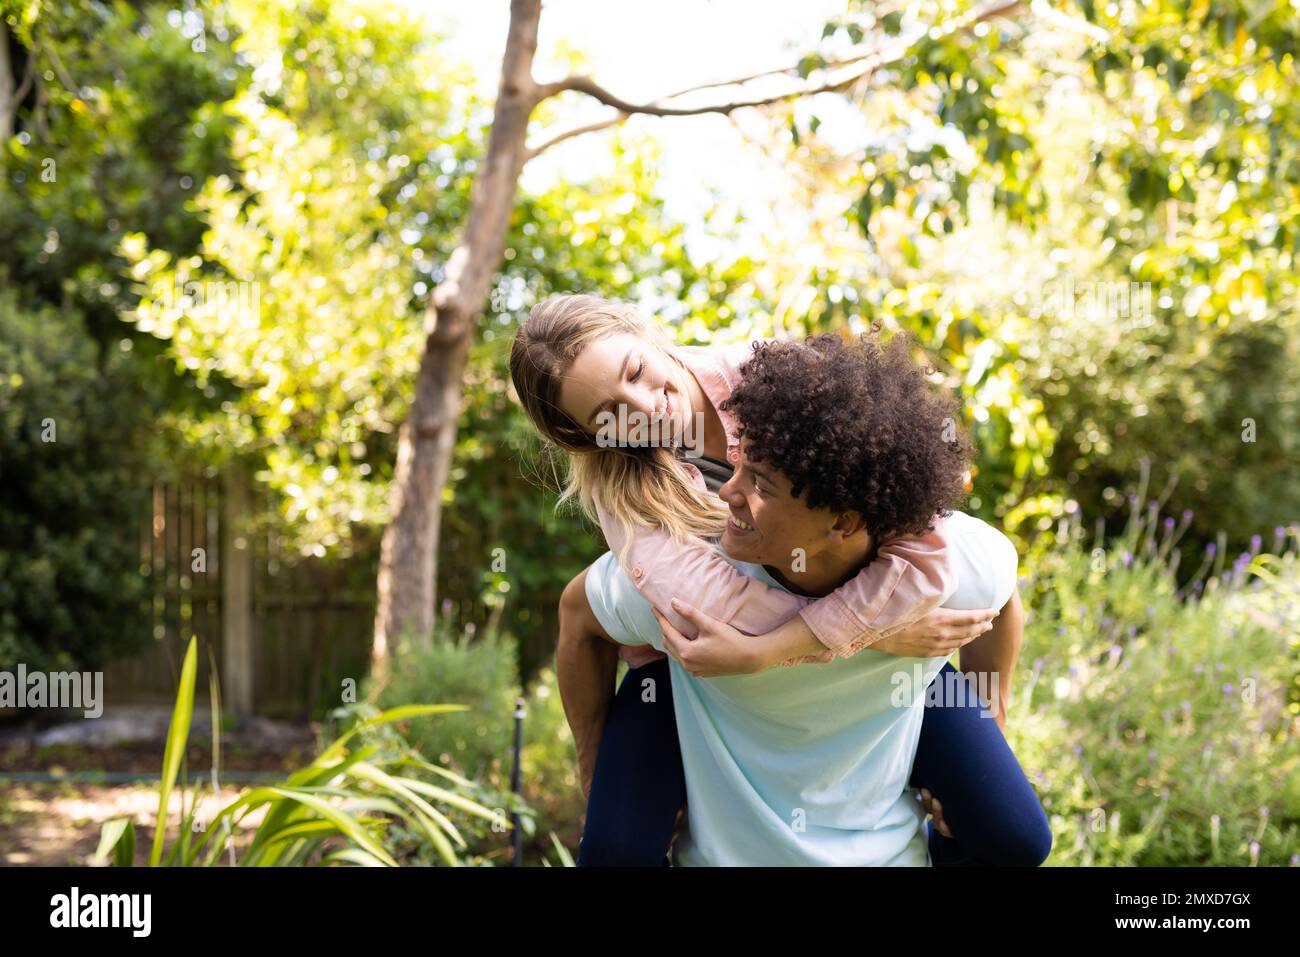 Happy diverse couple having fun piggybacking in sunny garden, copy space Stock Photo